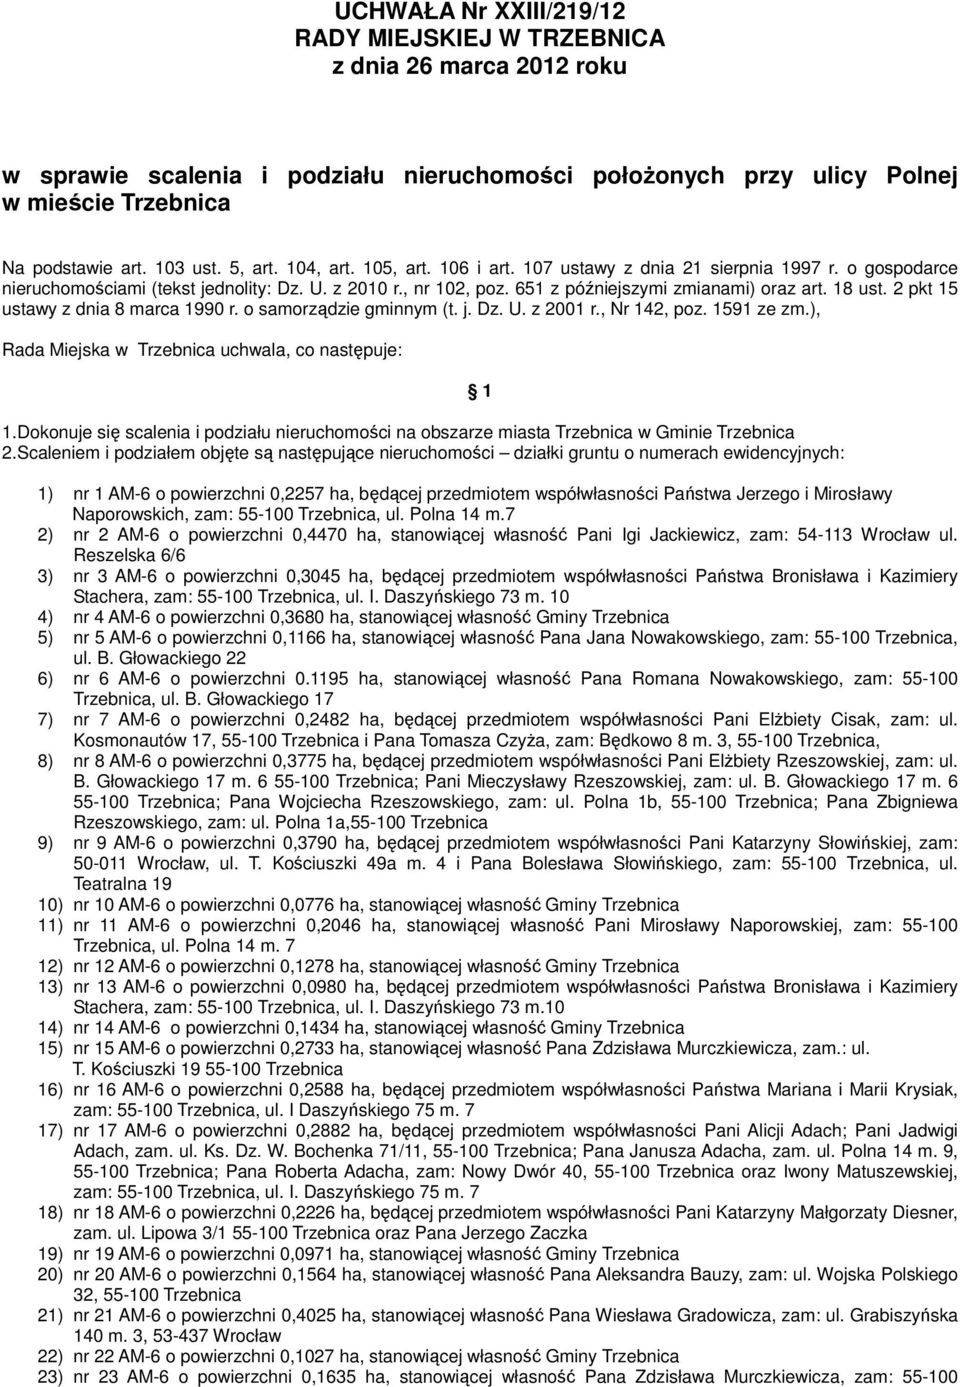 18 ust. 2 pkt 15 ustawy z dnia 8 marca 1990 r. o samorządzie gminnym (t. j. Dz. U. z 2001 r., Nr 142, poz. 1591 ze zm.), Rada Miejska w Trzebnica uchwala, co następuje: 1.